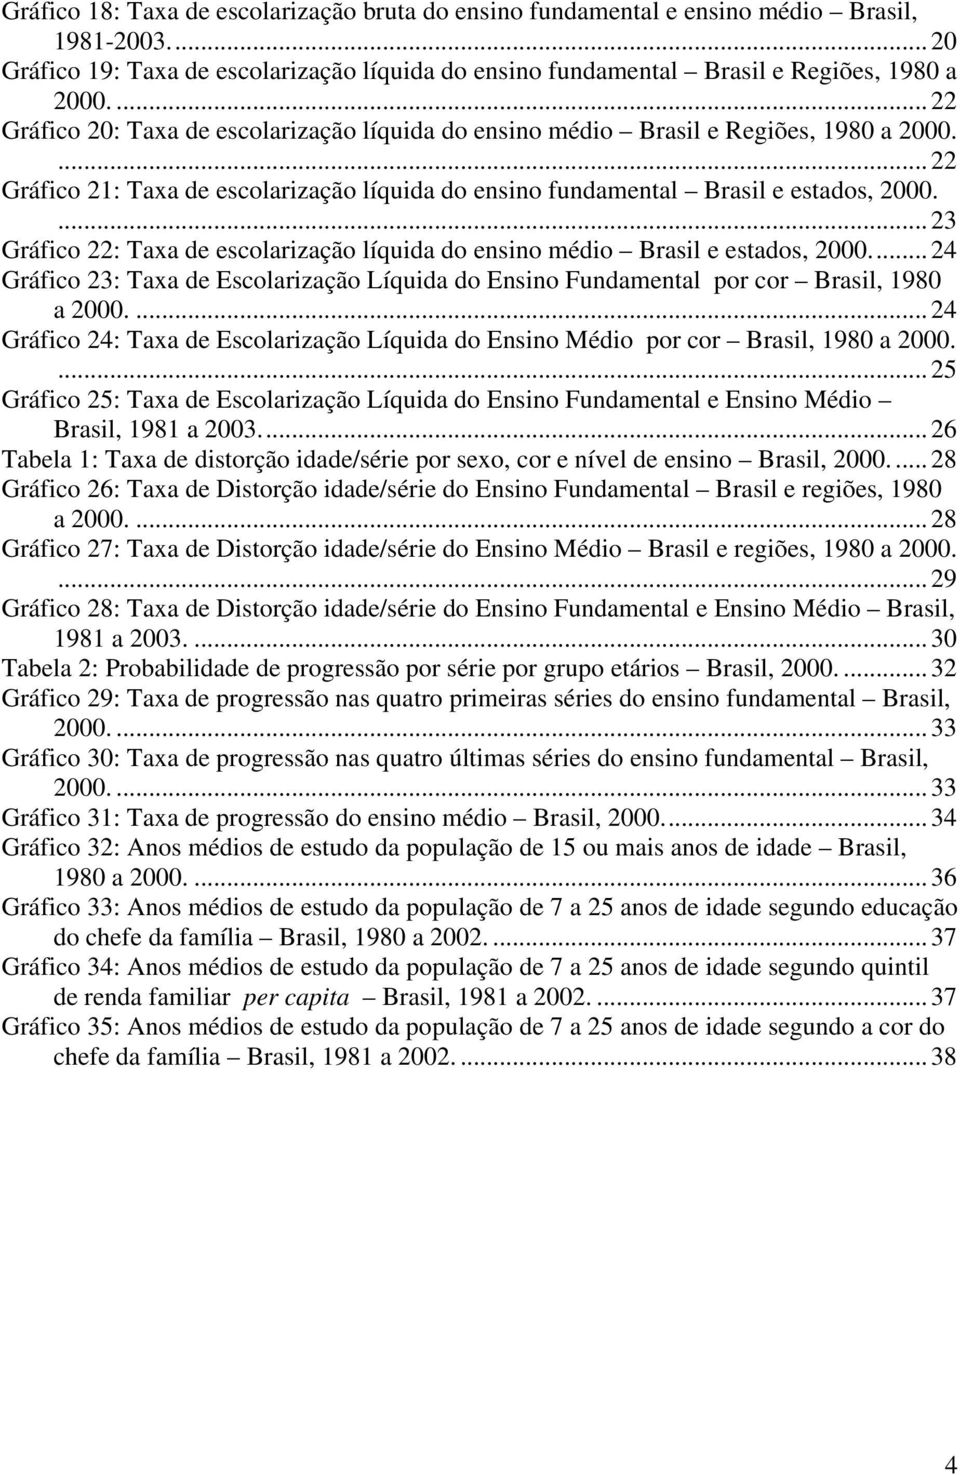 ...23 Gráfico 22: Taxa de escolarização líquida do ensino médio Brasil e estados, 2000...24 Gráfico 23: Taxa de Escolarização Líquida do Ensino Fundamental por cor Brasil, 1980 a 2000.